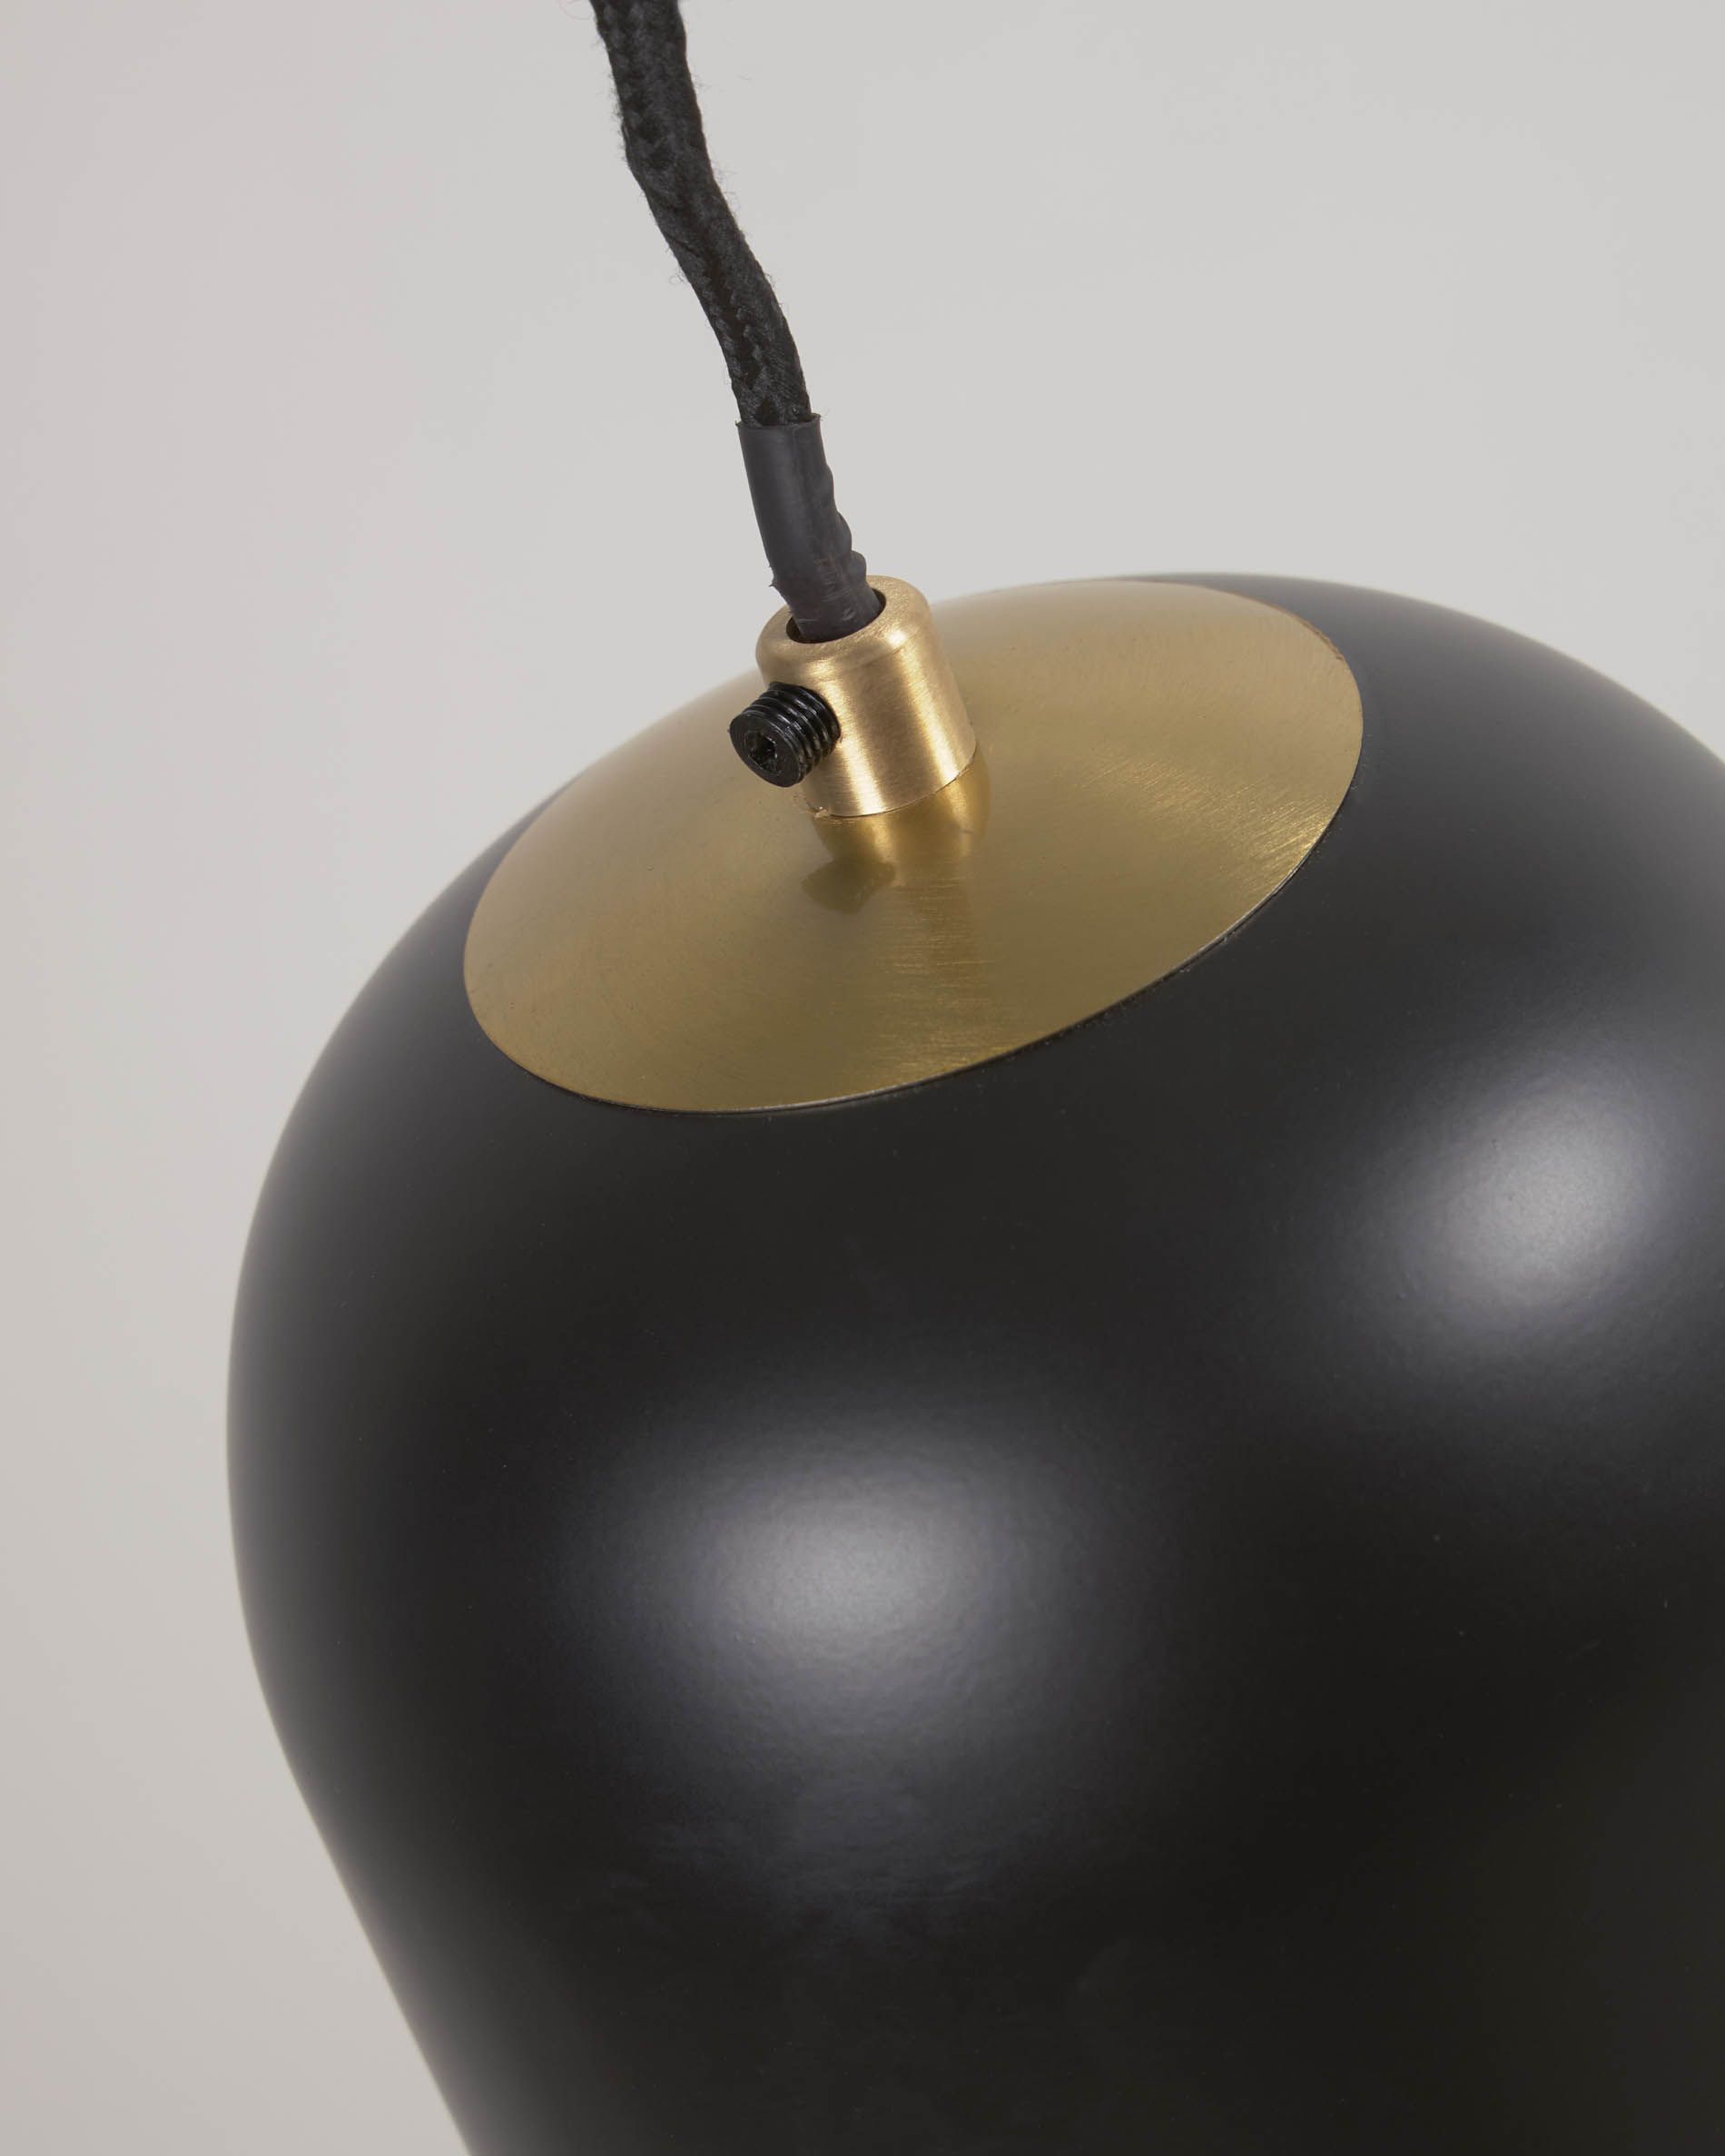 Металлический светильник Eulogia окрашенный в черный цвет